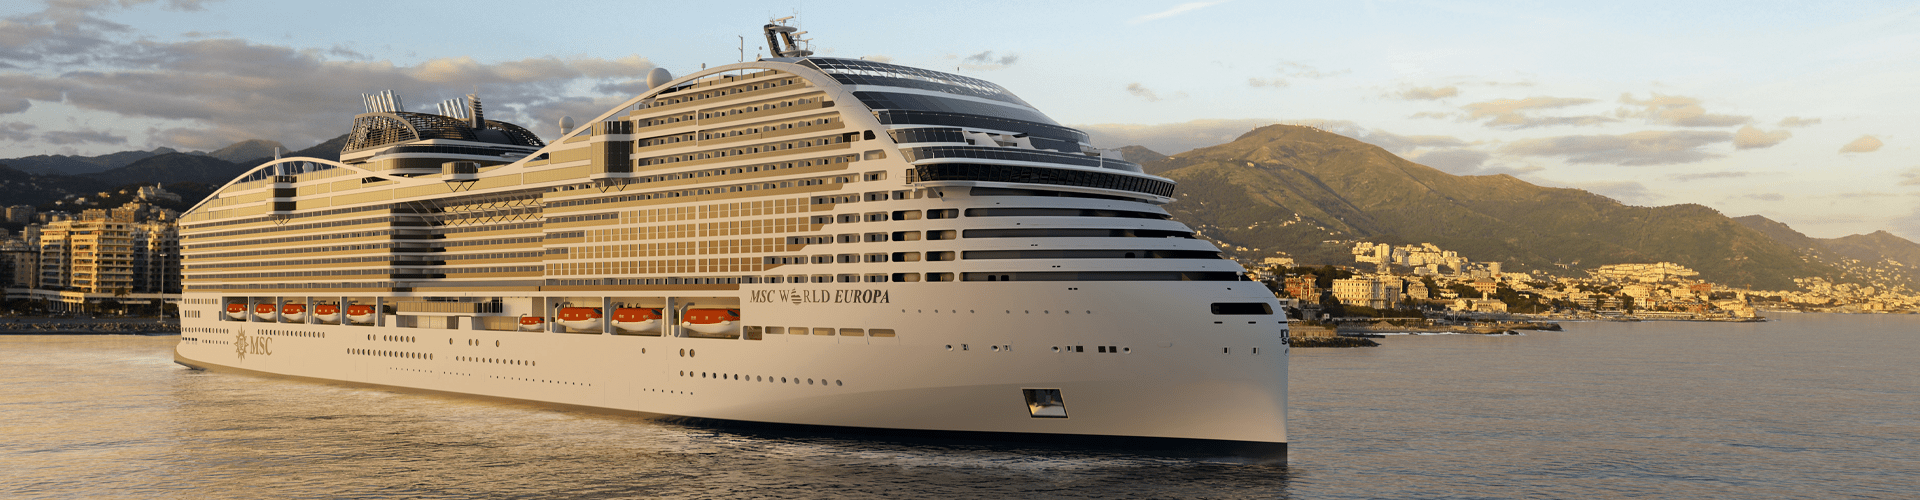 Cruise holidays with MSC Cruises – 